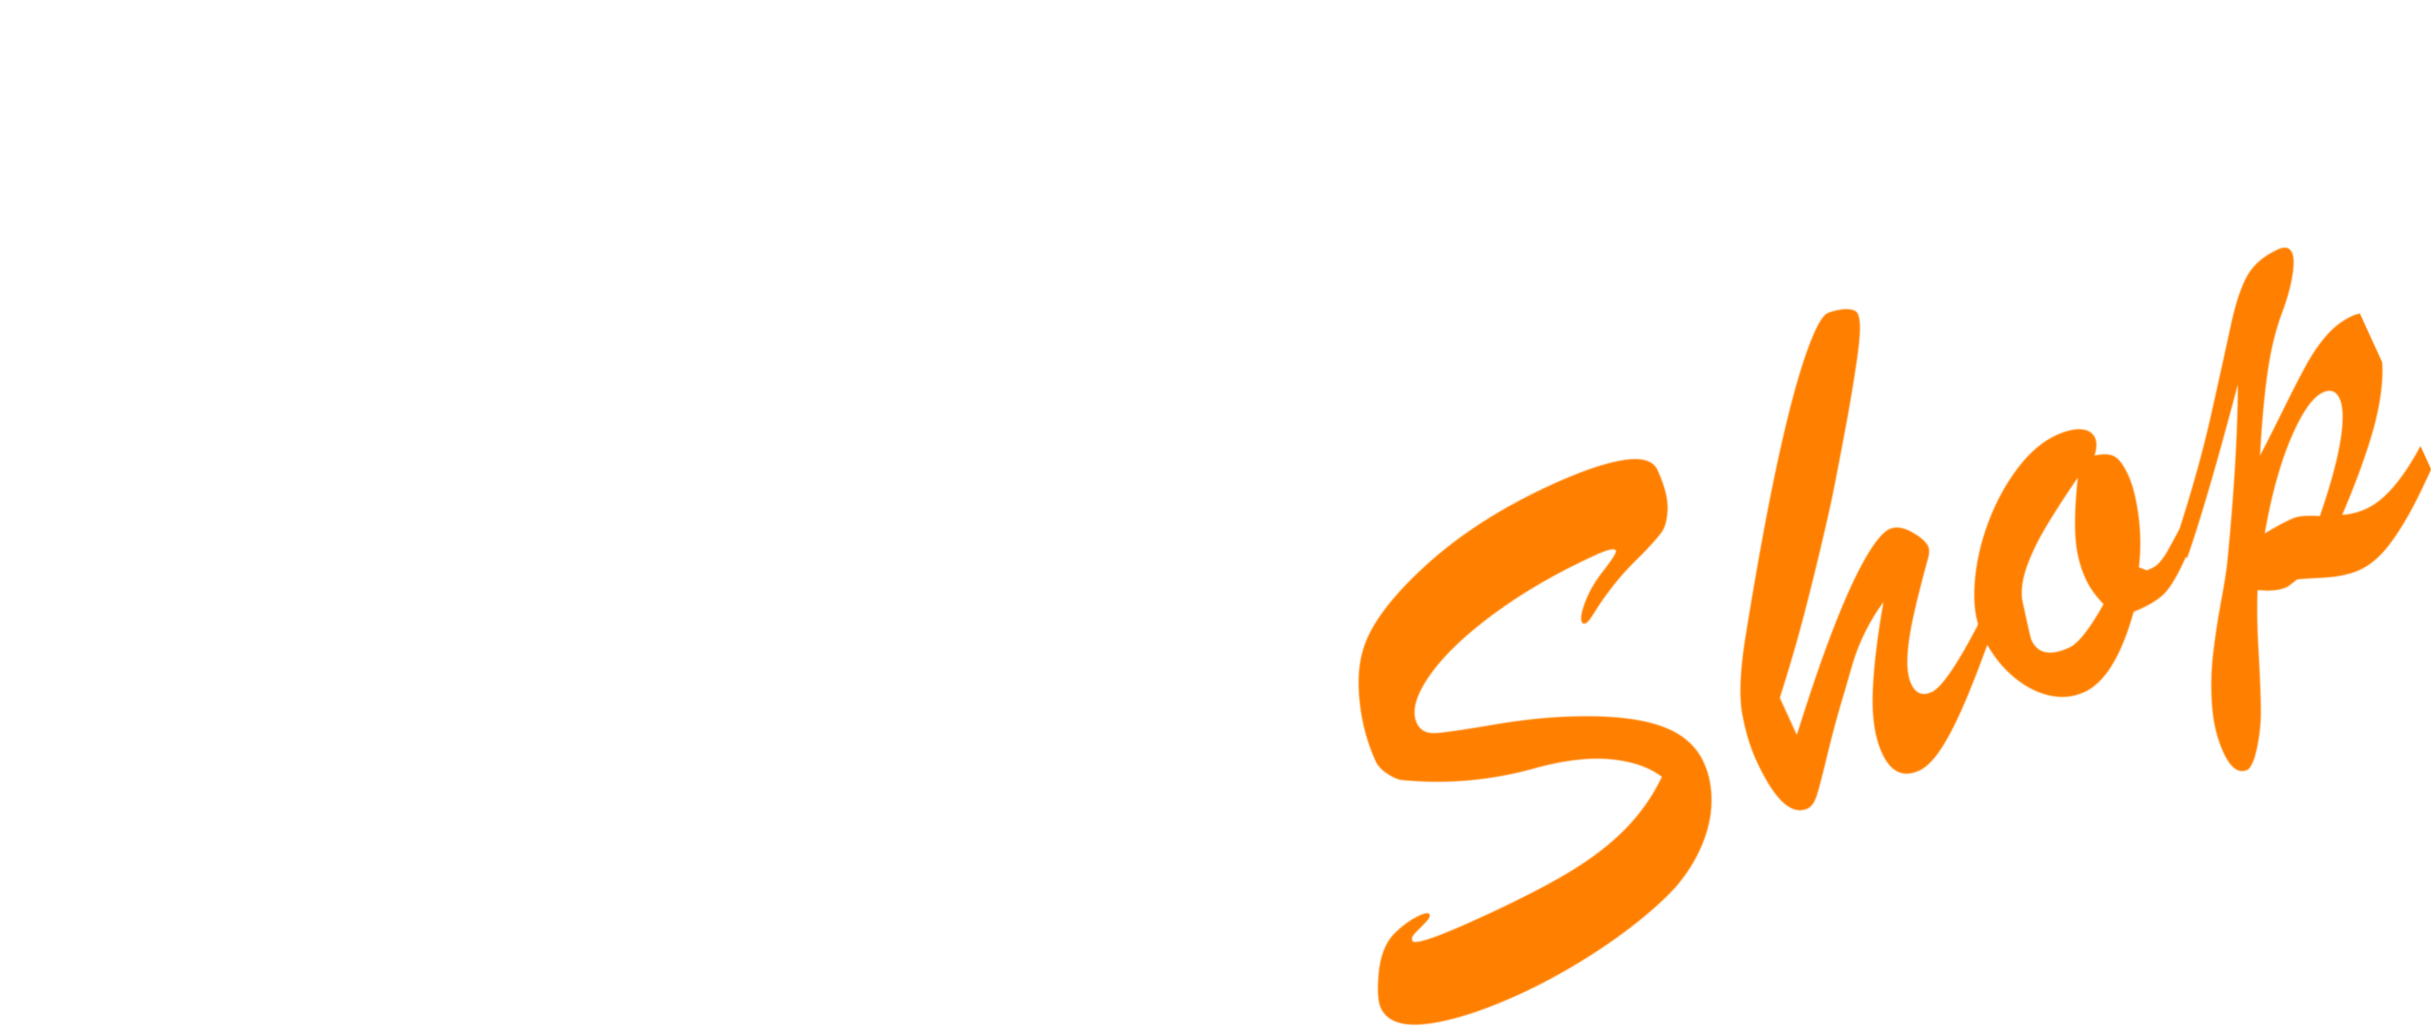 20200102 Logo KiloShop